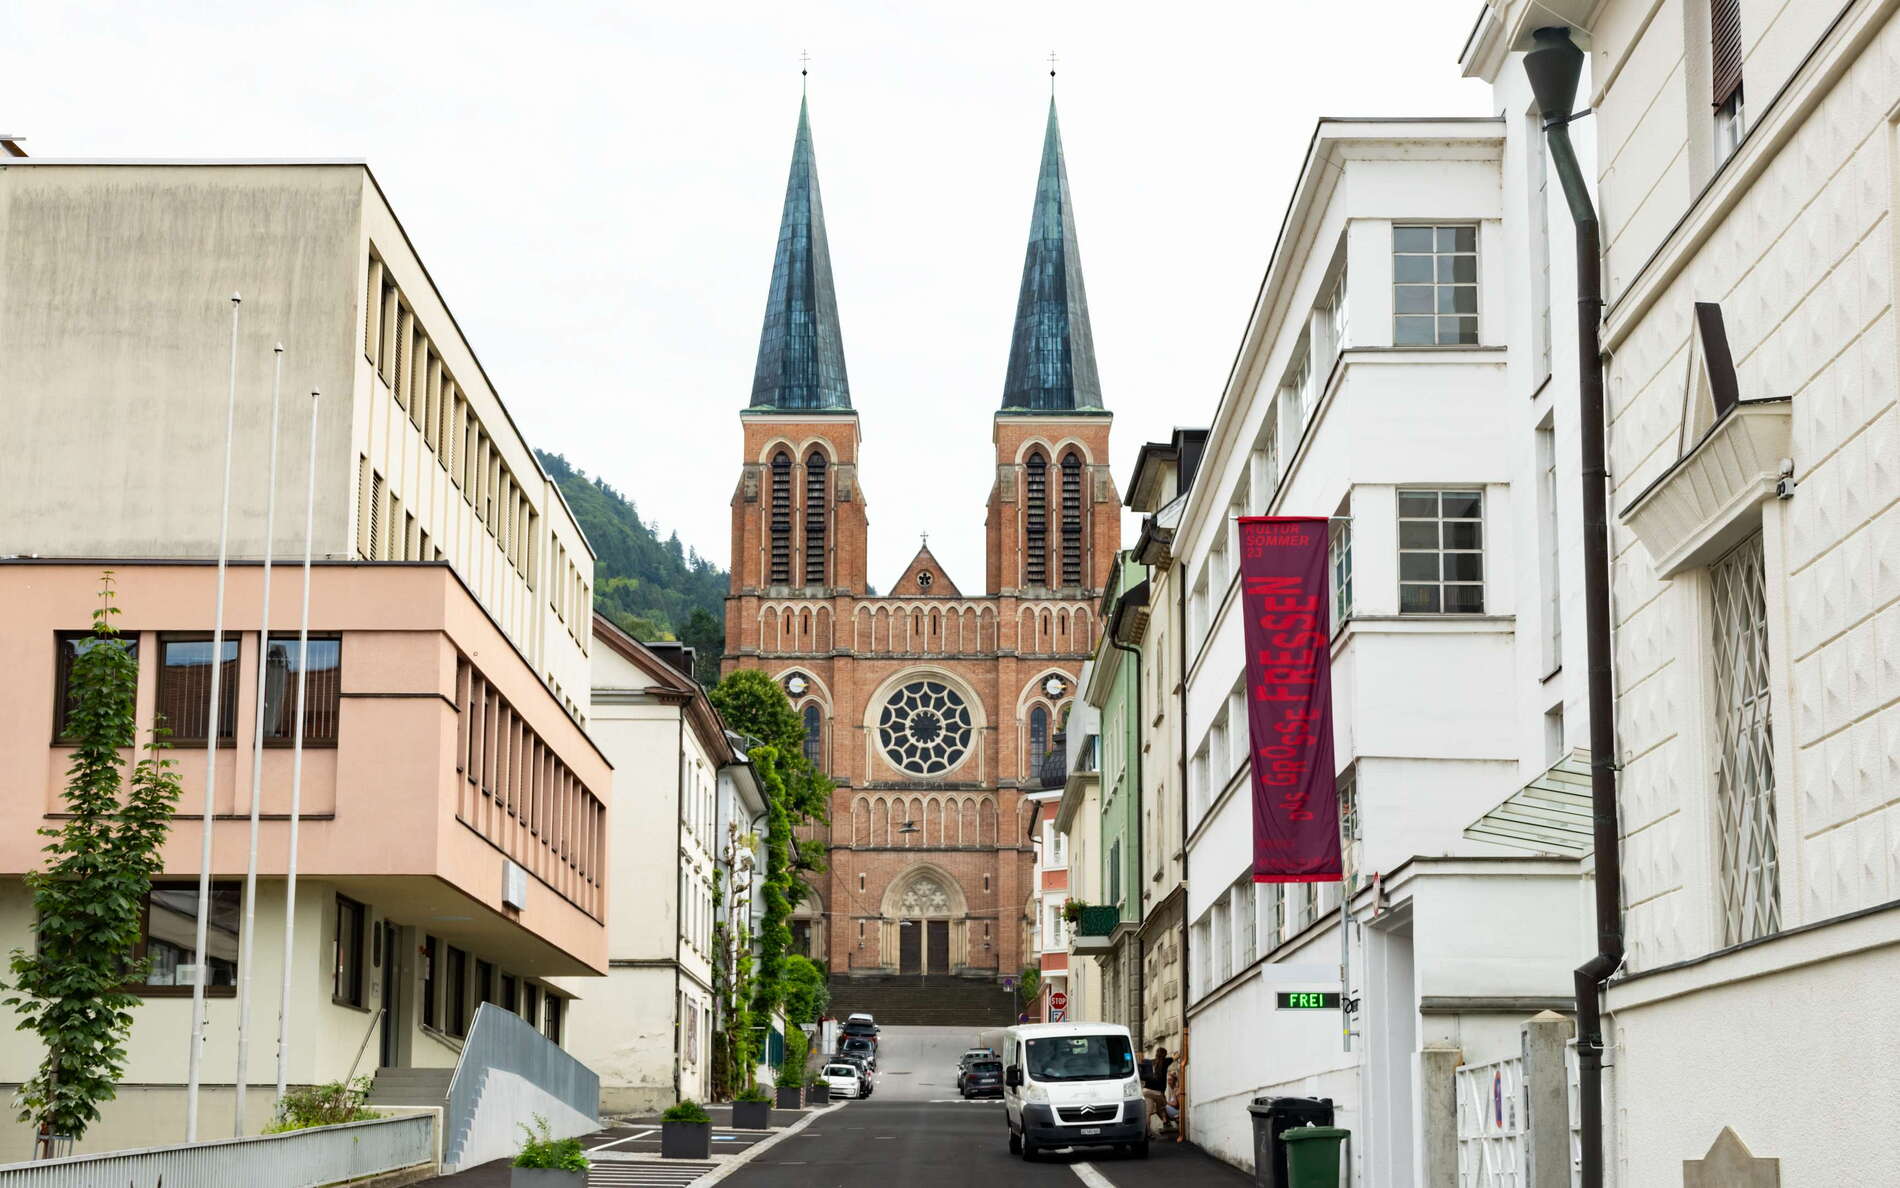 Bregenz | Bergmannstraße and Herz-Jesu-Kirche